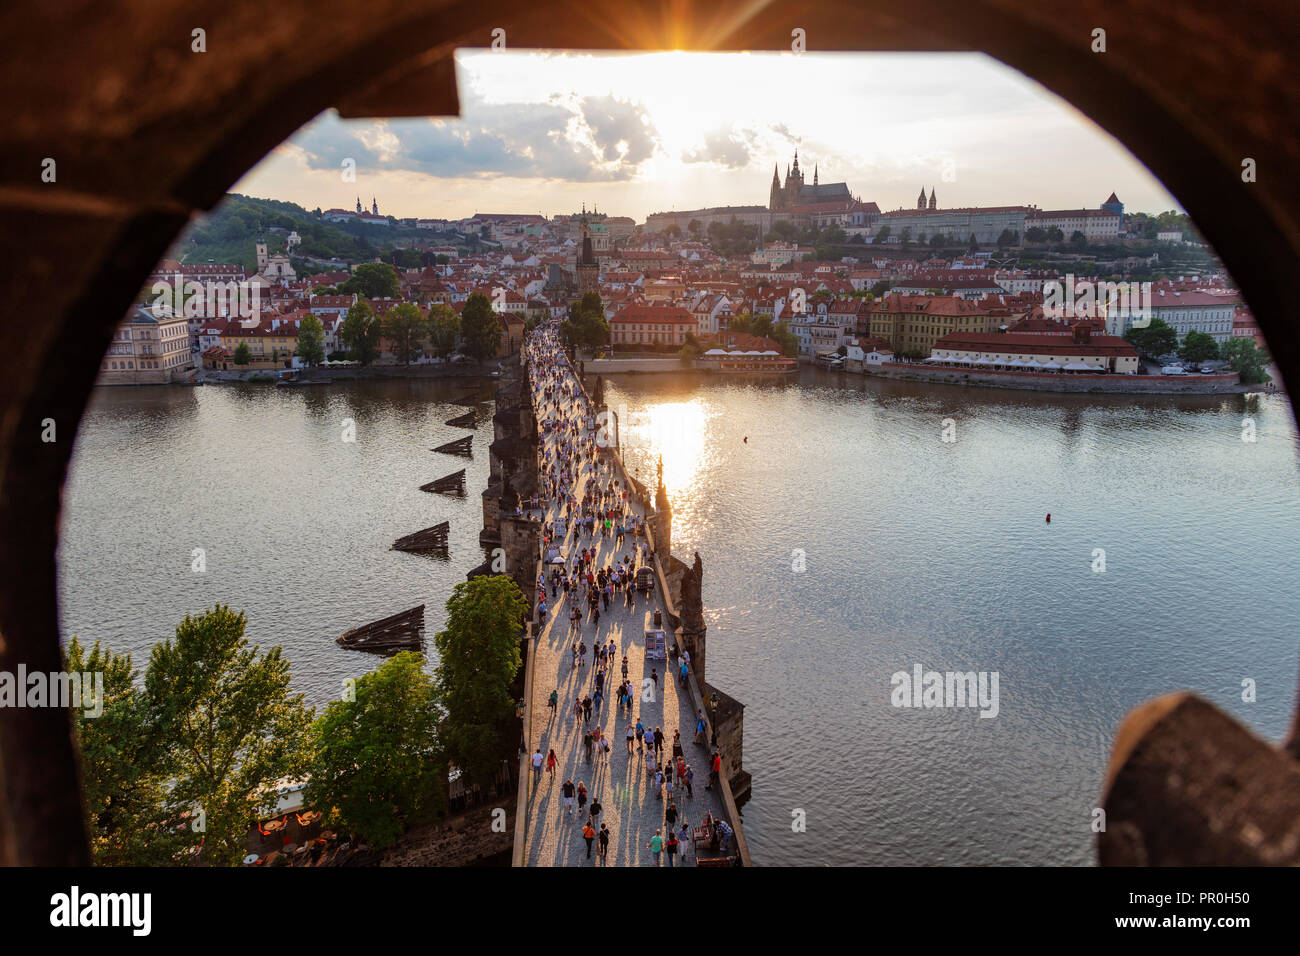 Le Pont Charles, le château de Prague et cathédrale Saint-Guy de Prague, classé au Patrimoine Mondial de l'UNESCO, la Bohême, République Tchèque, Europe Banque D'Images